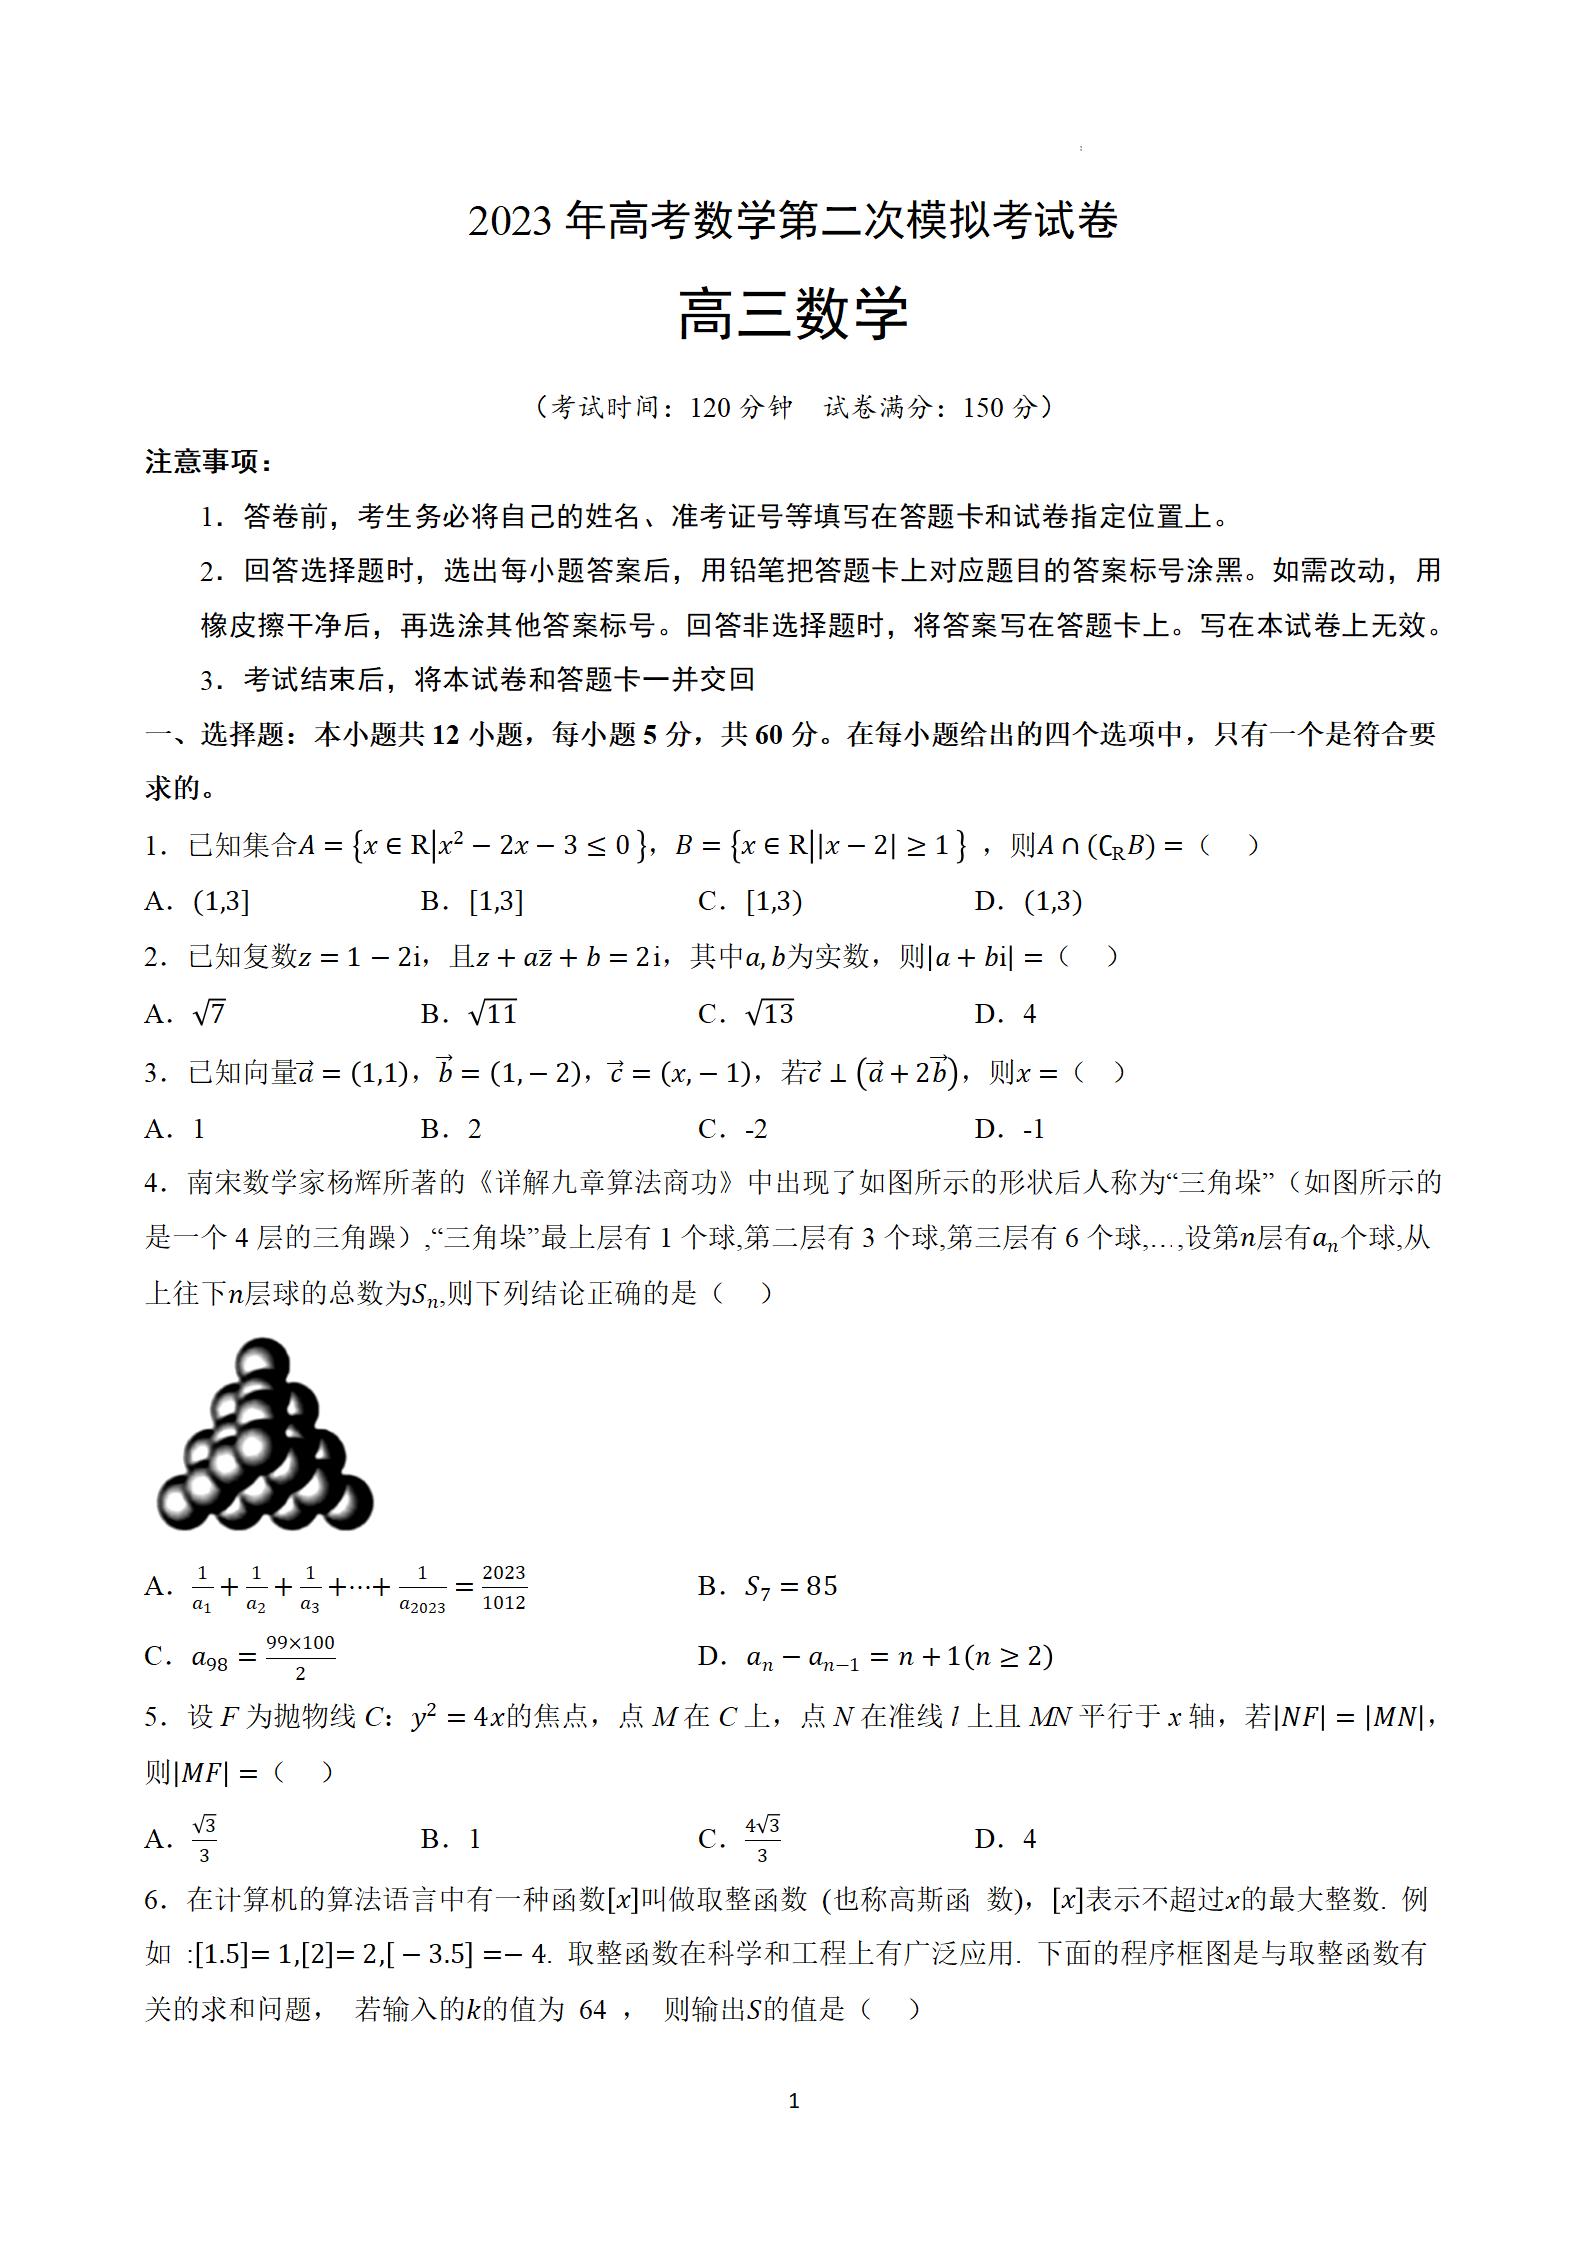 中国大学生数学竞赛预赛试卷 LaTeX 模板 - LaTeX科技排版工作室